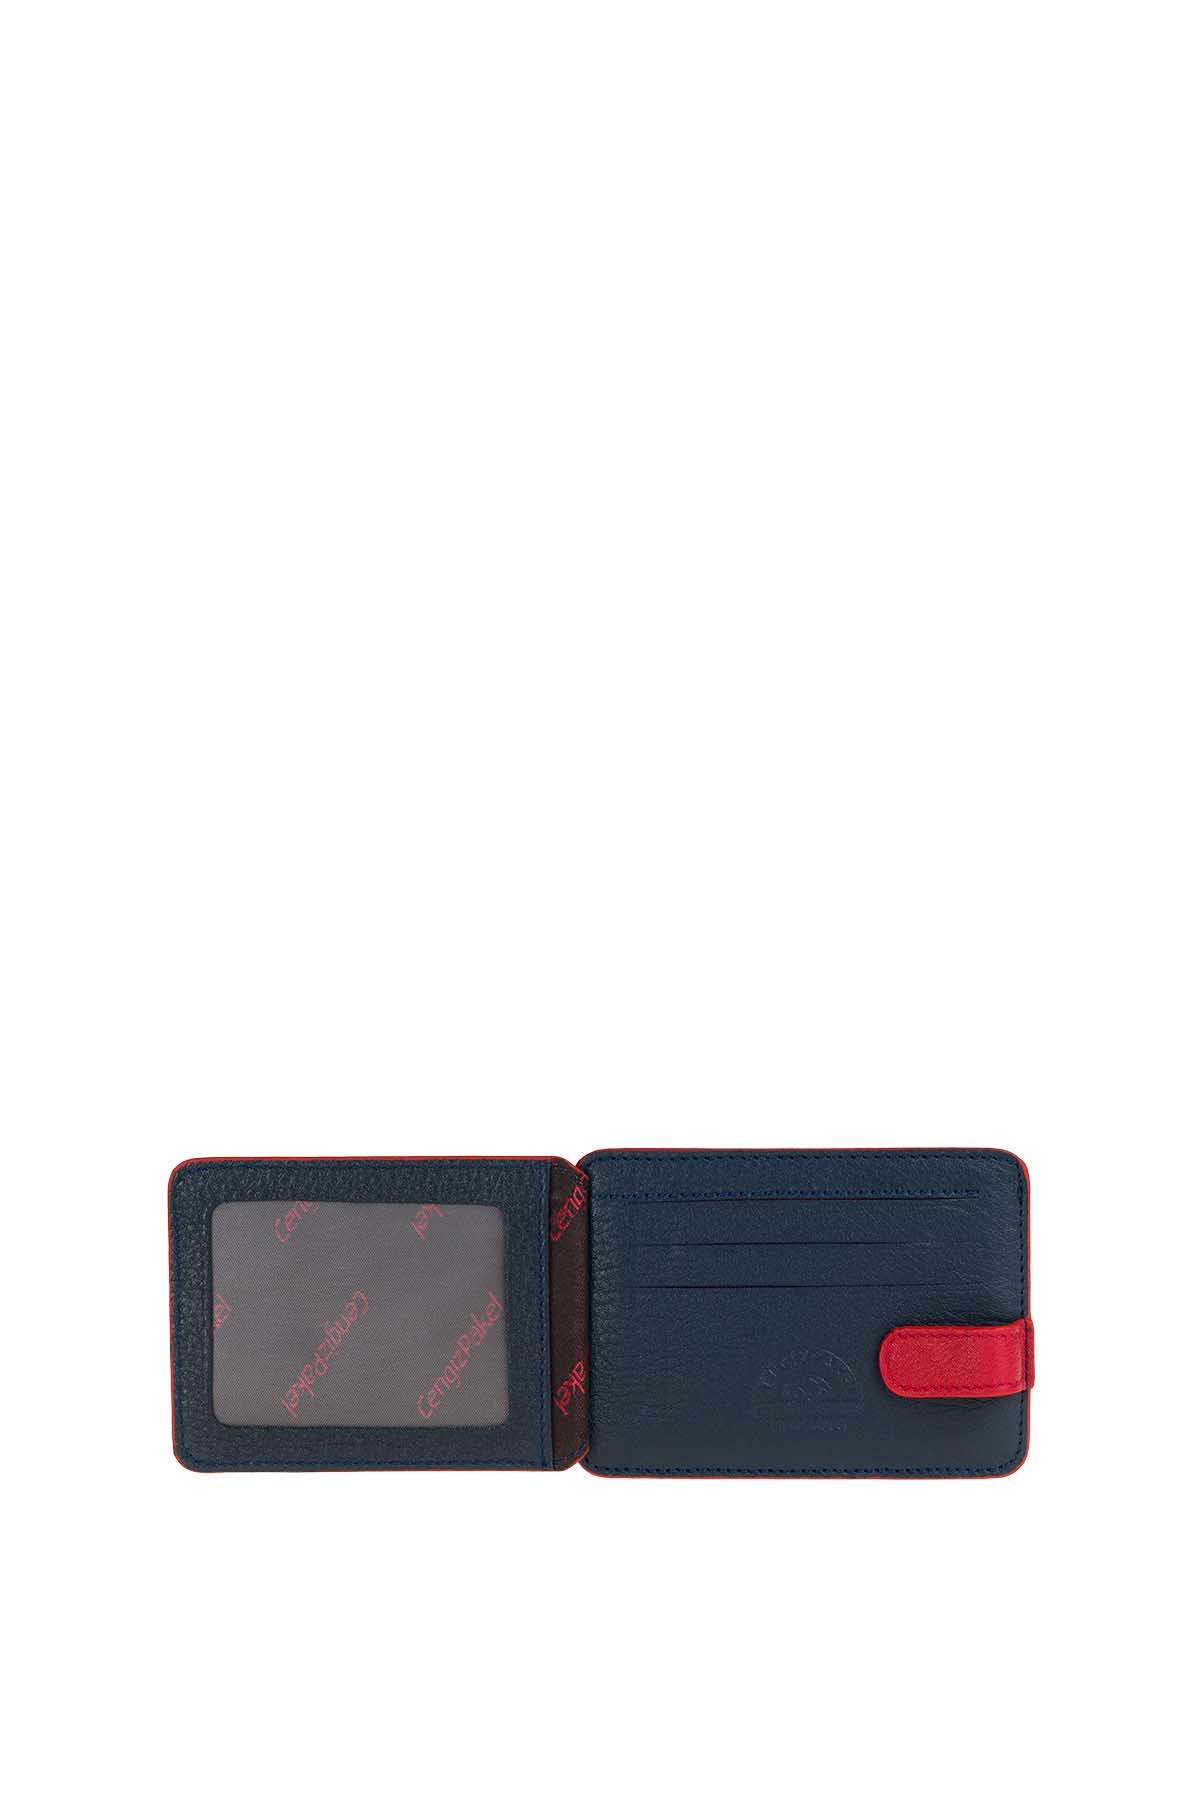 Hakiki Deri Kartlık 2404-Lacivert-Kırmızı - Cengiz Pakel